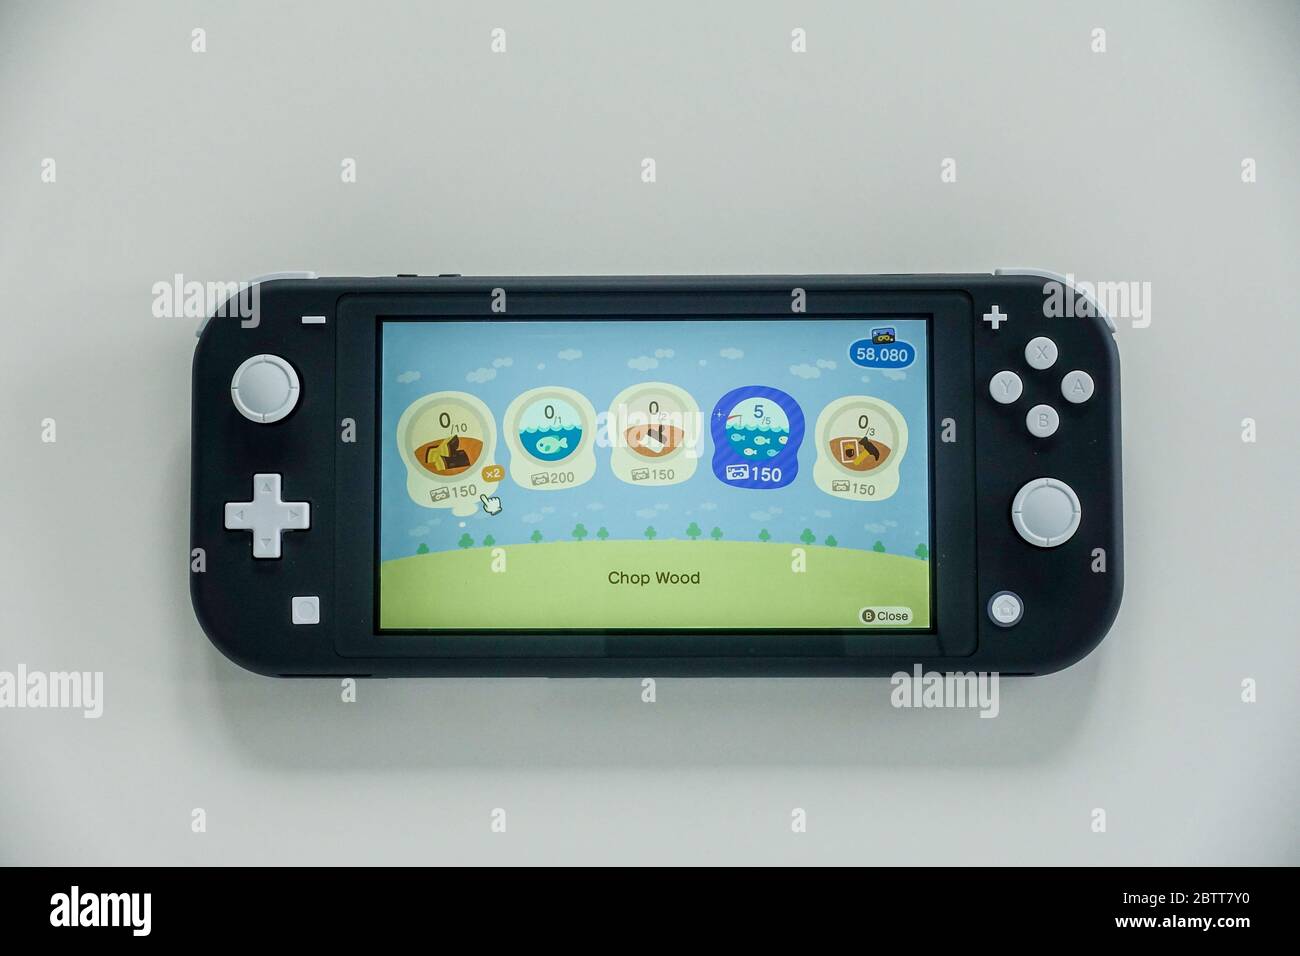 Orlando,FL/USA -5/27/20: L'écran NOOK Miles + dans le jeu Animal Crossing  New Horizons sur une Nintendo Switch Lite Photo Stock - Alamy